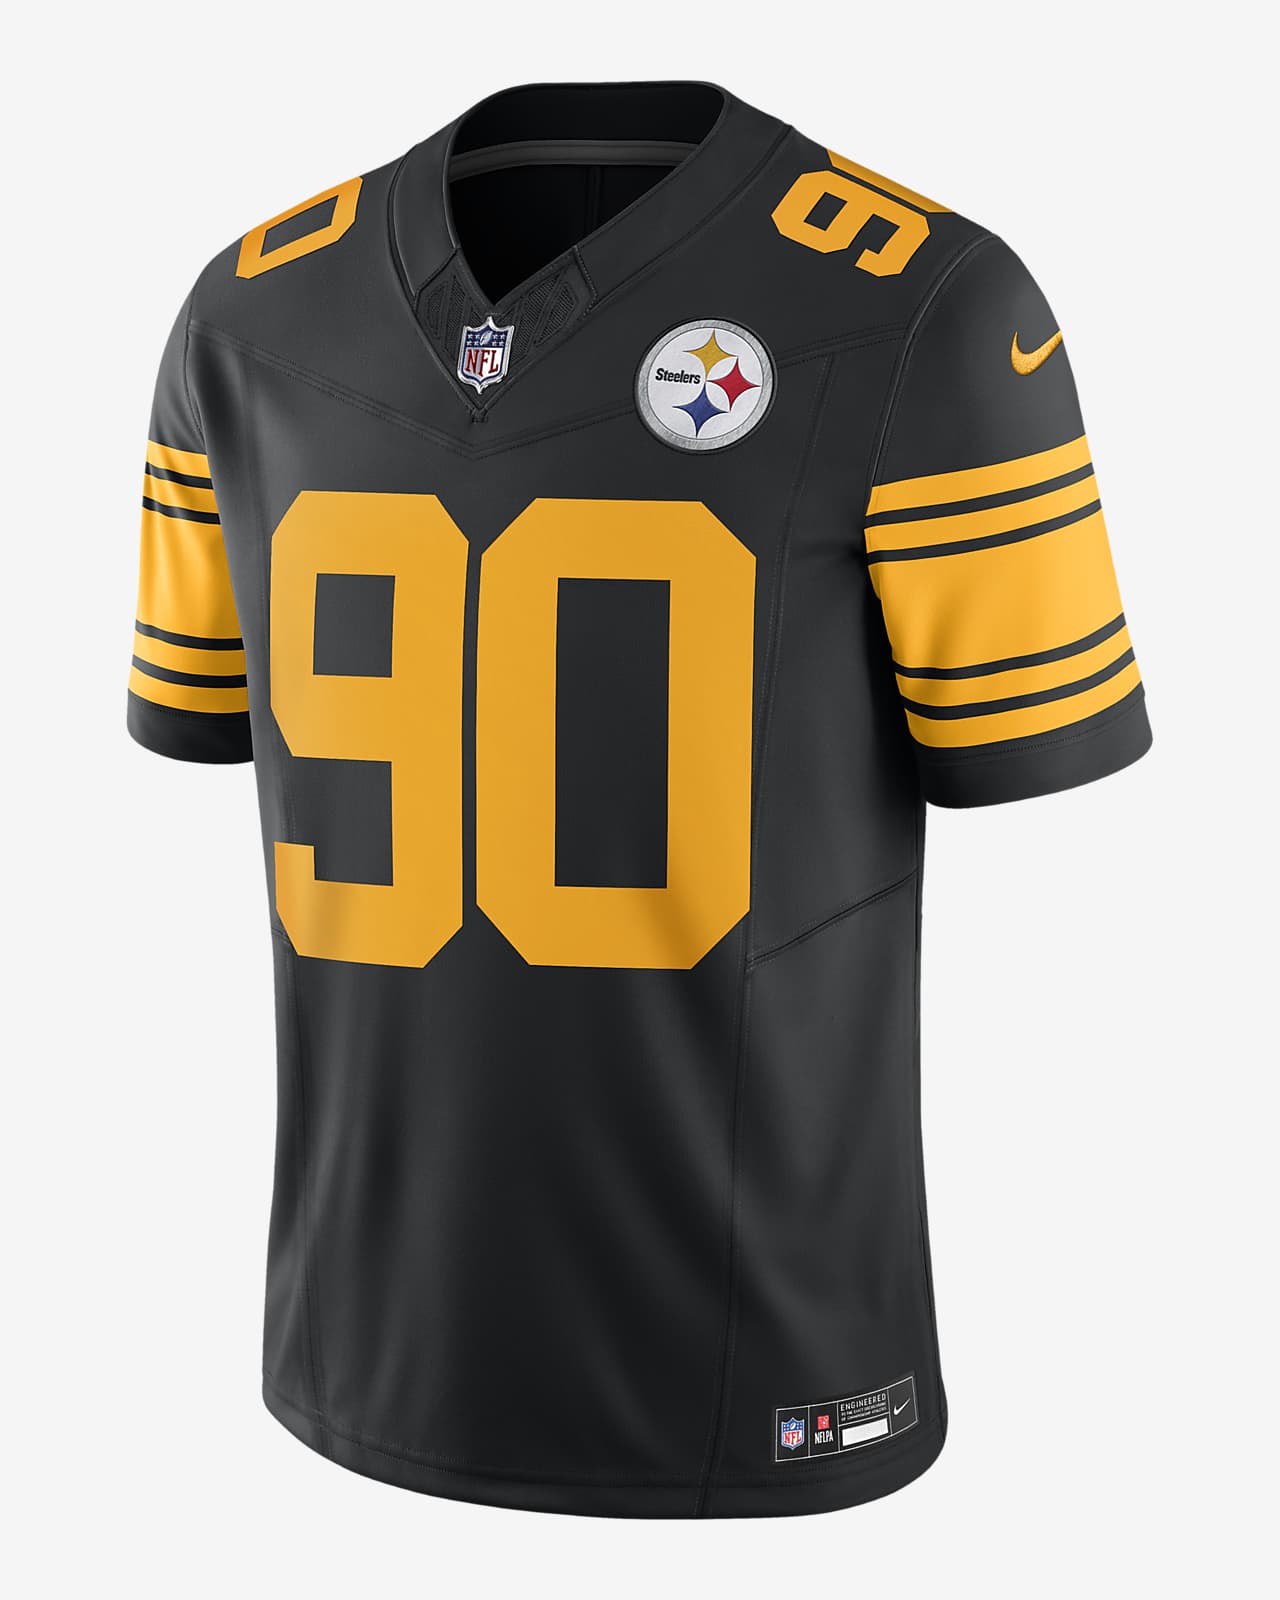 T.J. Jersey de fútbol americano Nike Dri-FIT de la NFL Limited para hombre T.J. Watt Pittsburgh Steelers